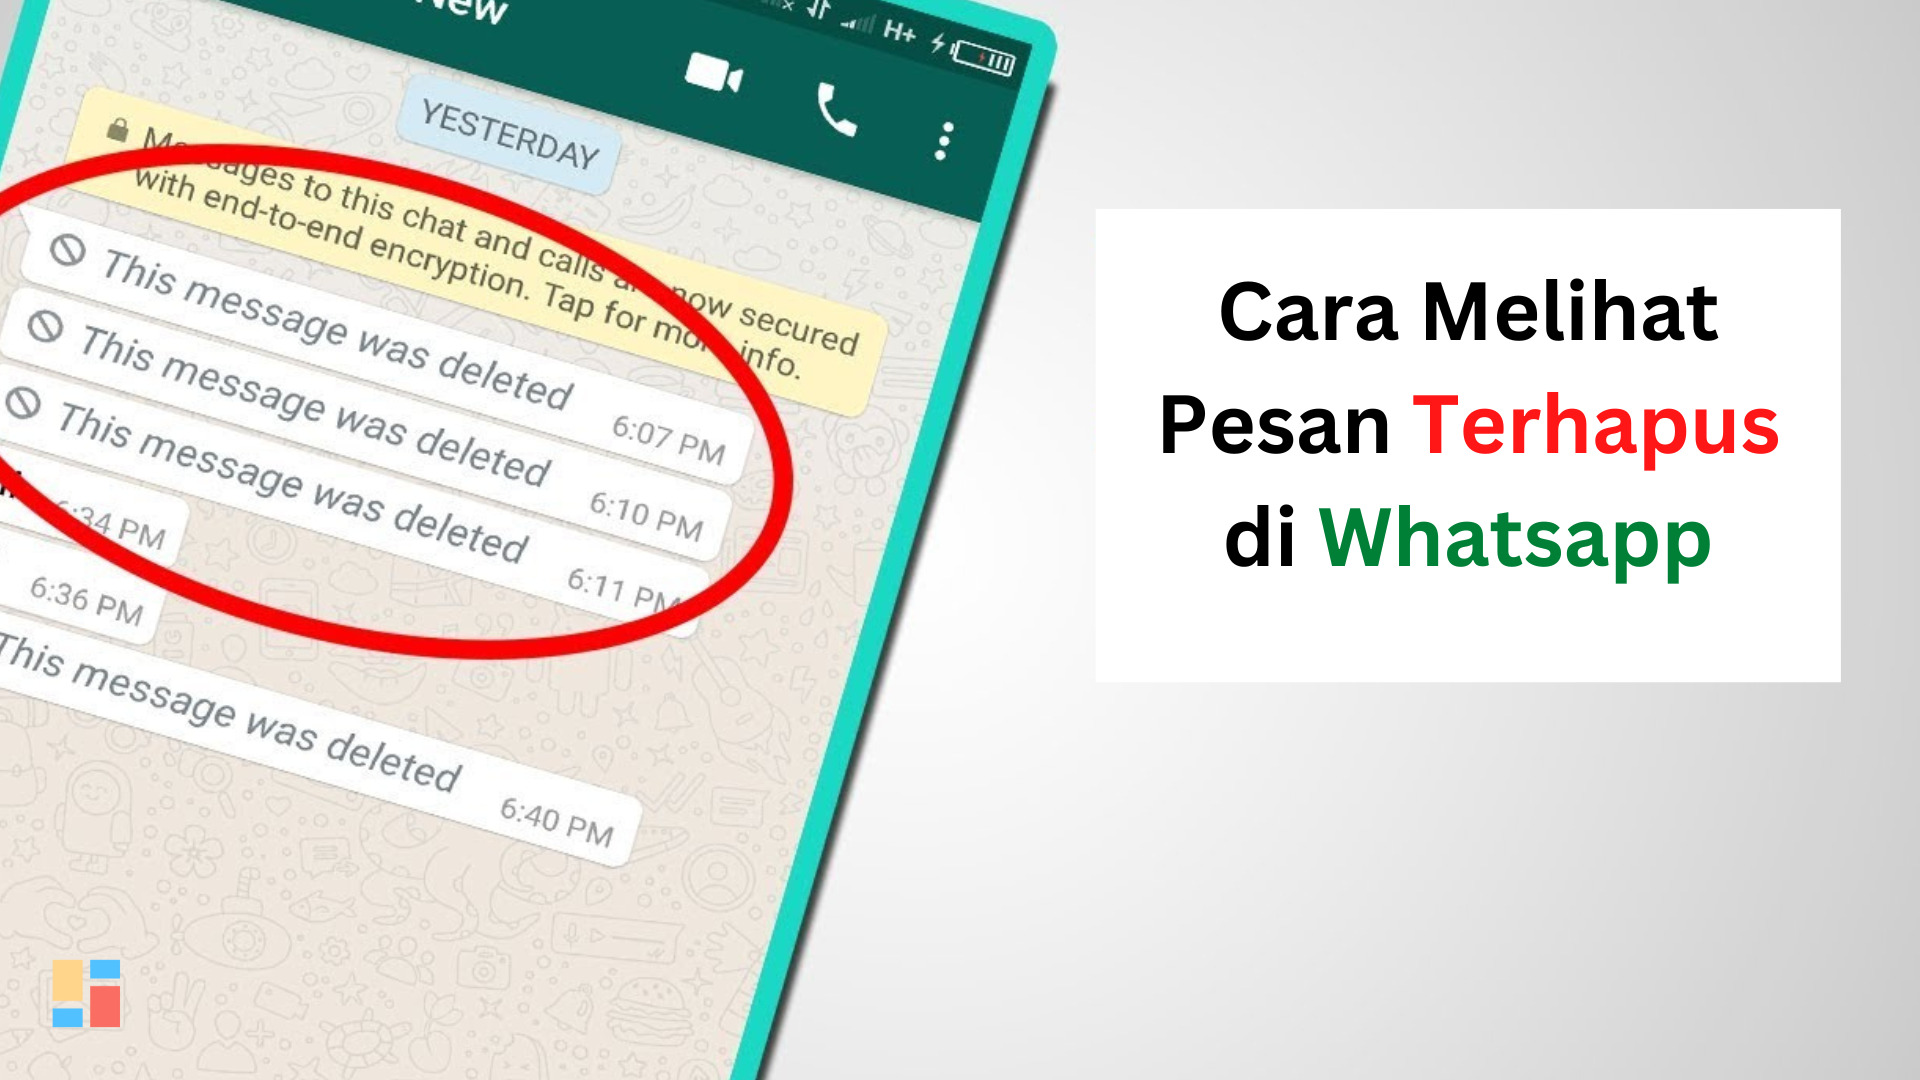 Cara Melihat Pesan Terhapus di Whatsapp